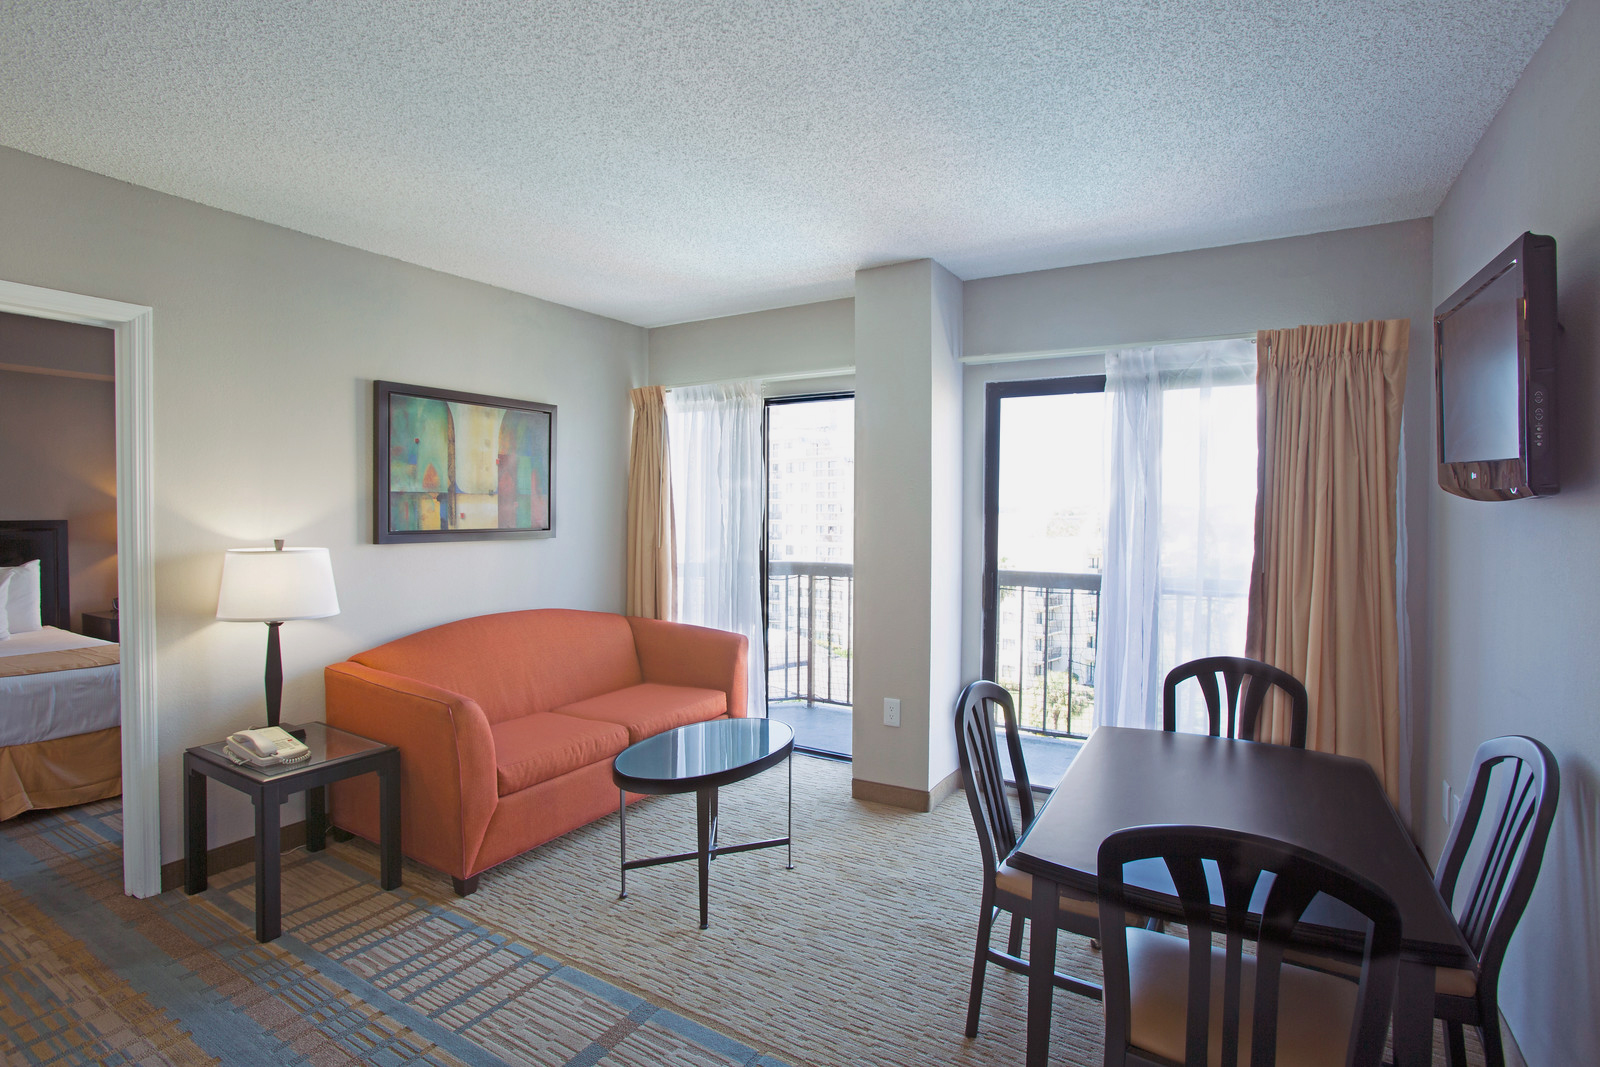 Orlando Hotel Suites Suites In Orlando One Bedroom The